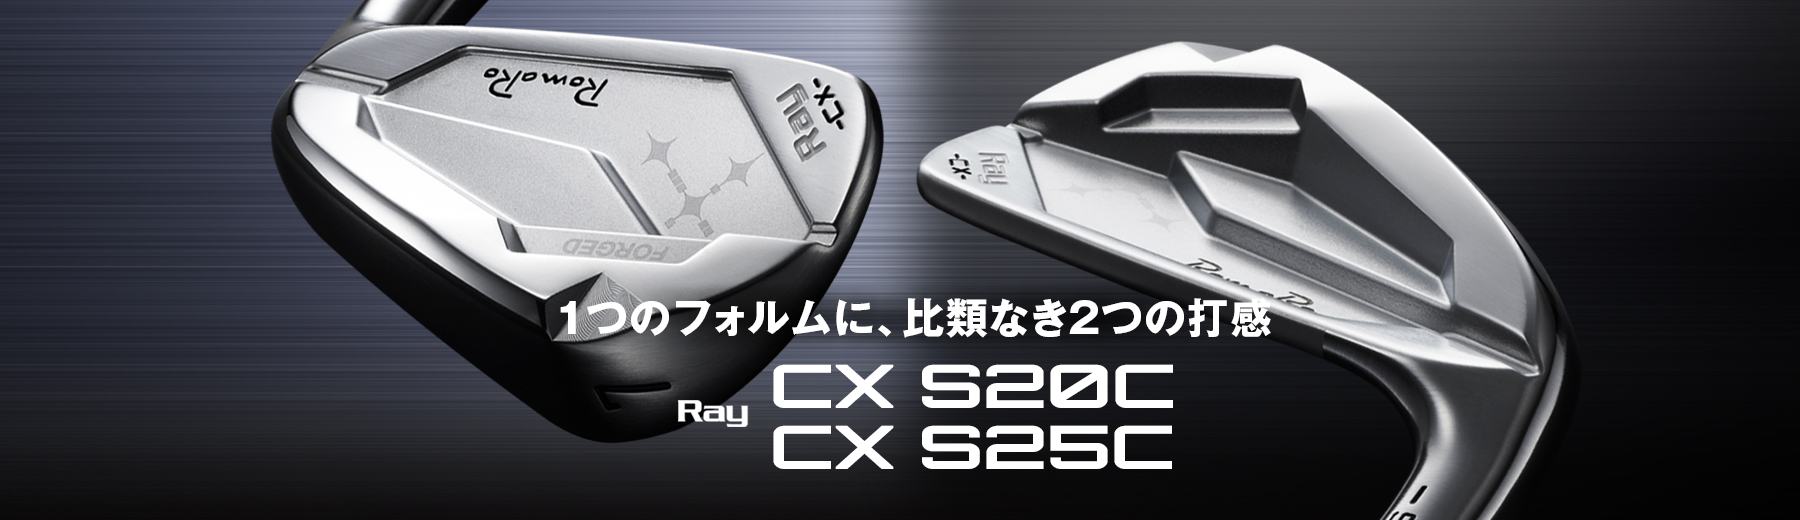 Ray CX S20C/S25C IRON | ロマロオフィシャルサイト